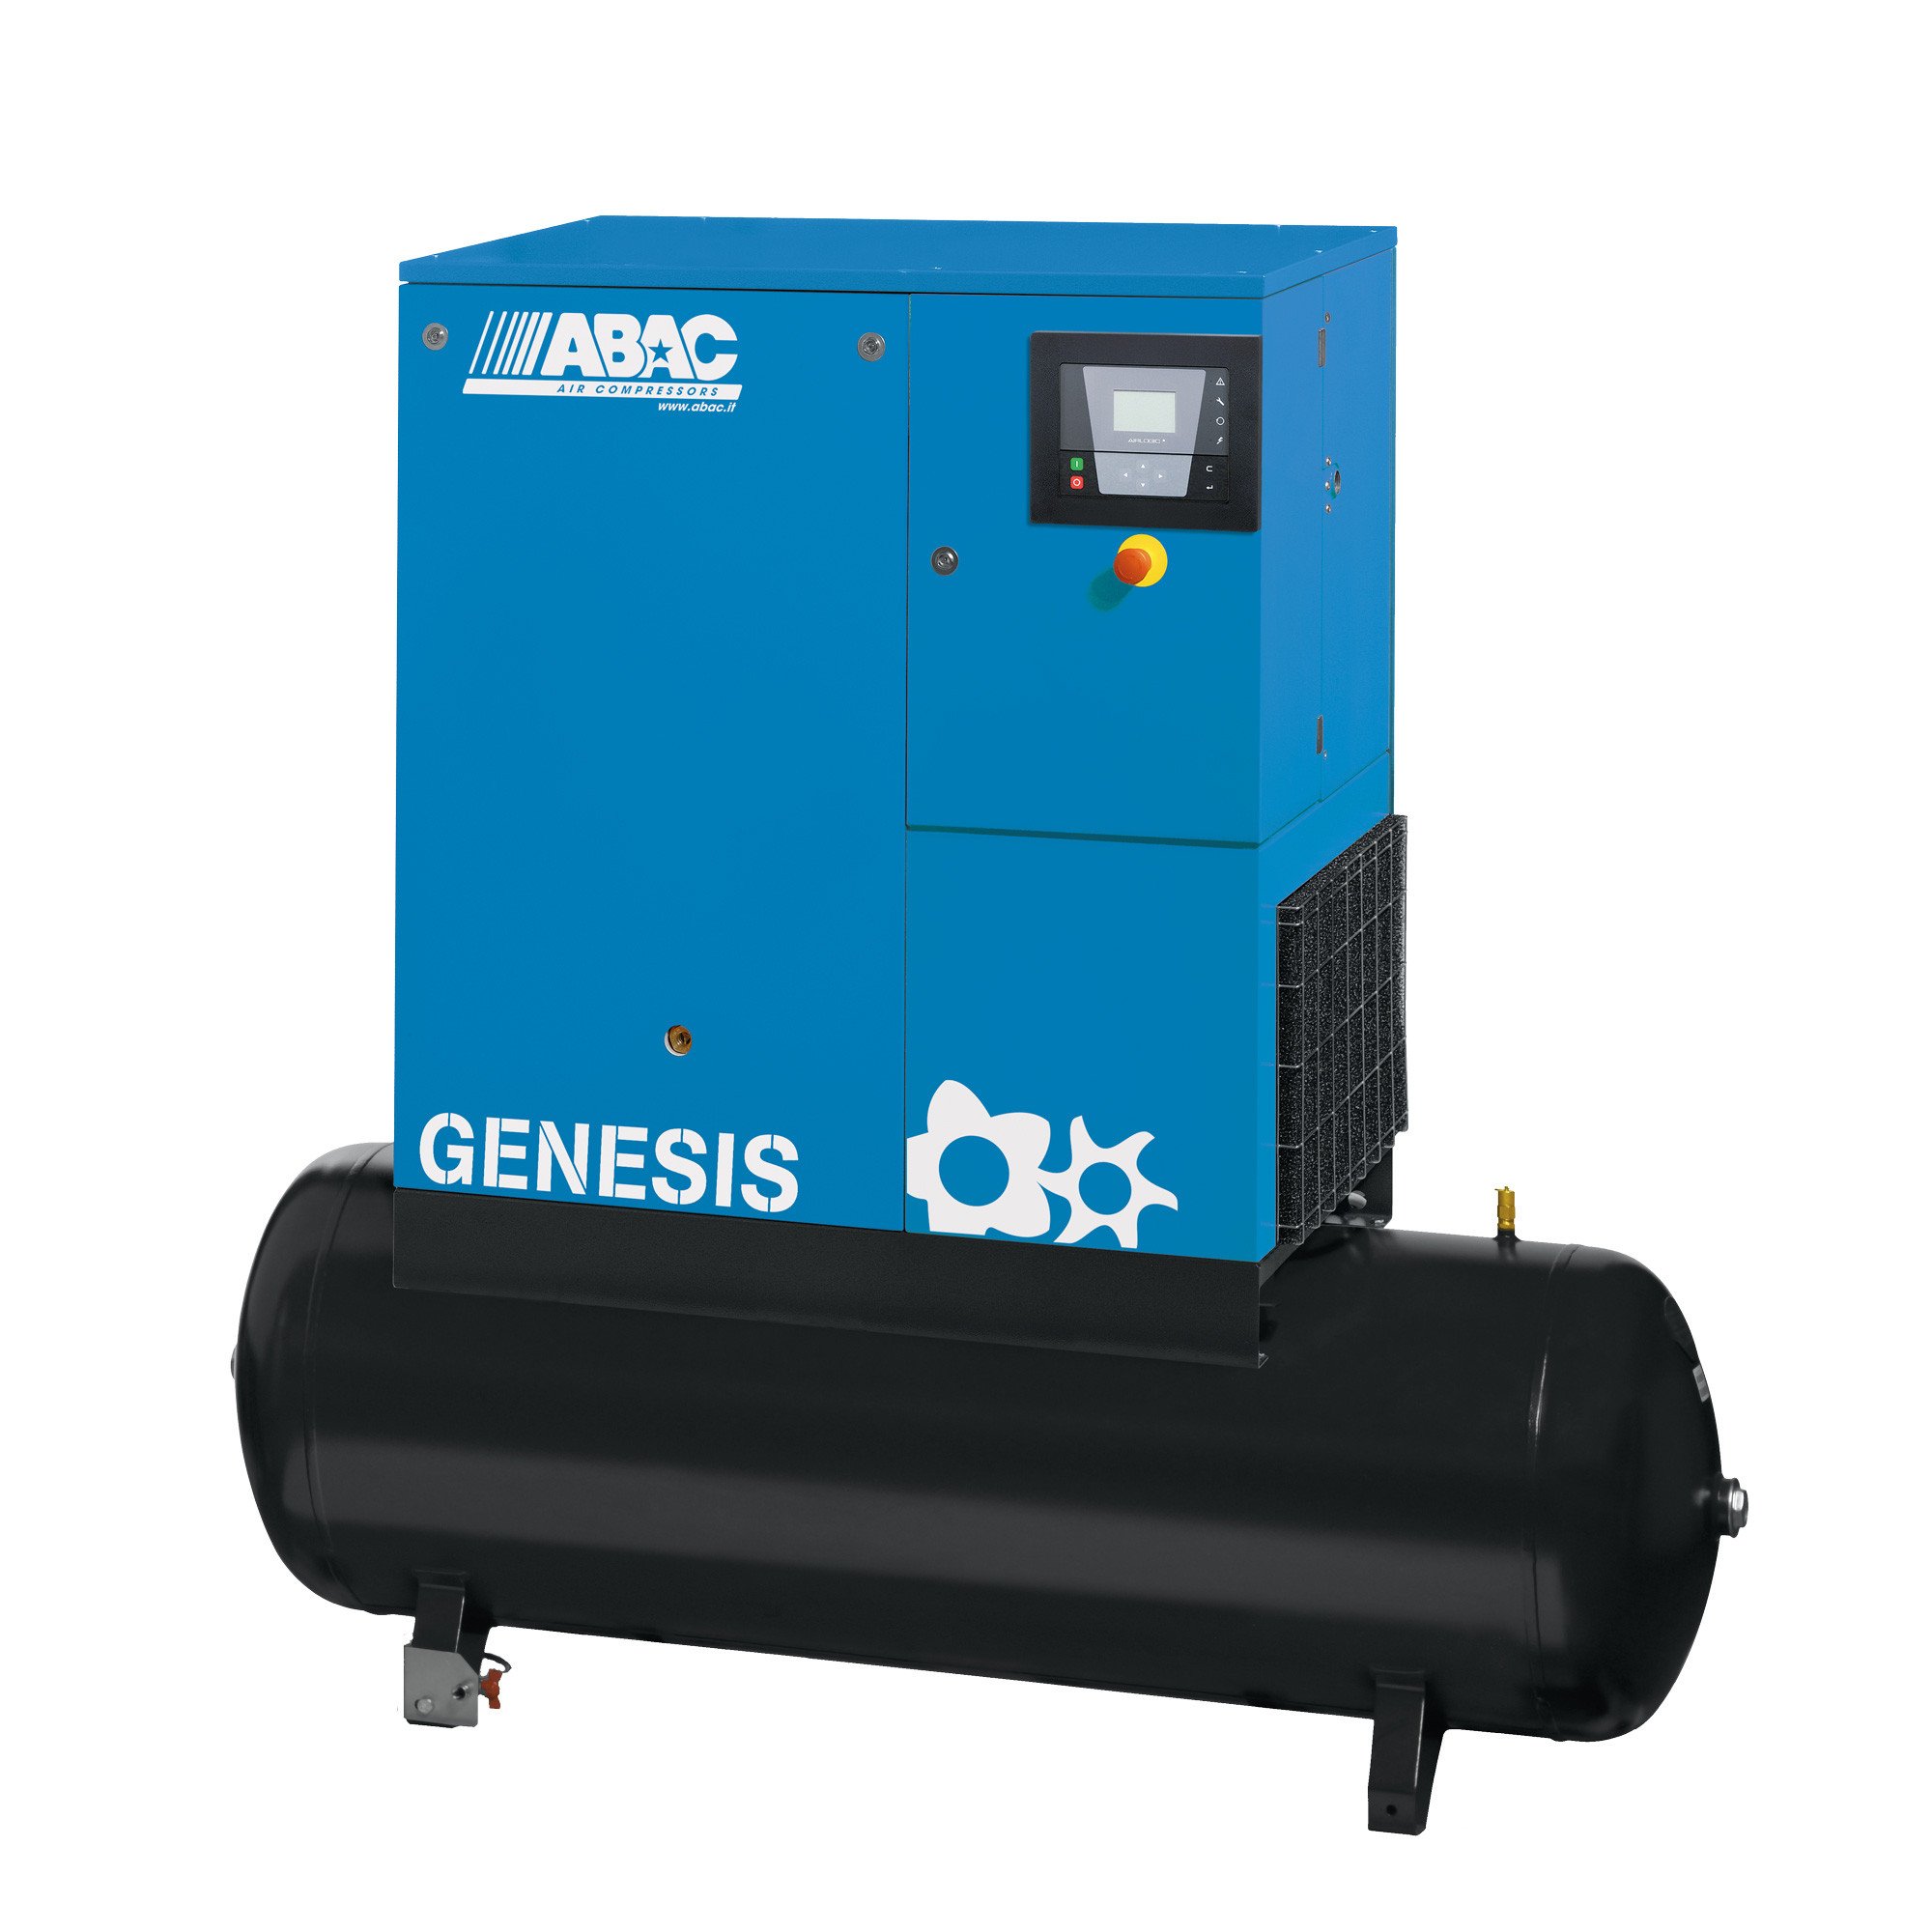 ABAC Genesis 500L, 31.08 CFM, 5.5 kW定速螺杆空压机| 31.08 CFM